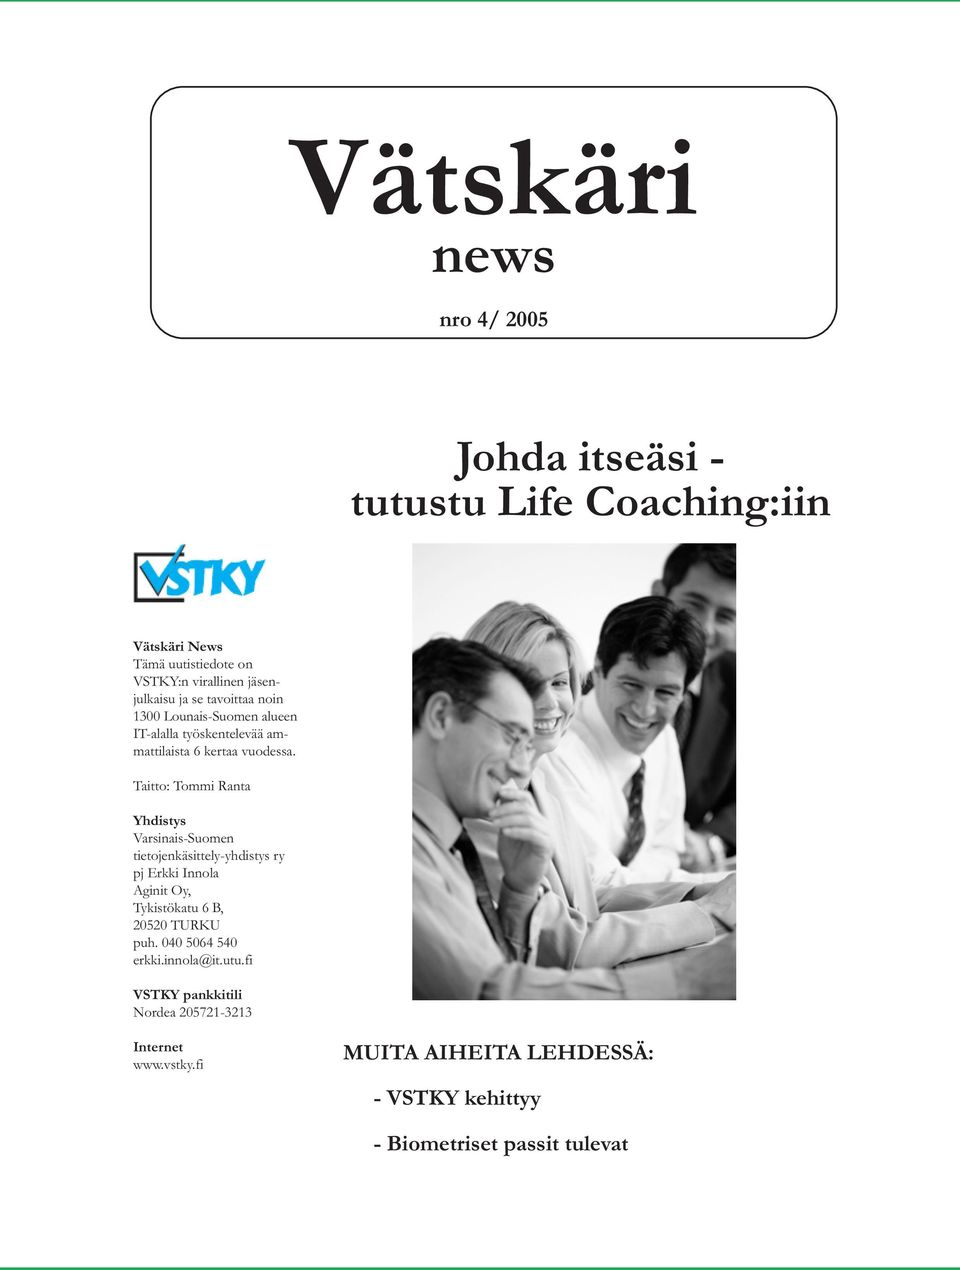 Taitto: Tommi Ranta Yhdistys Varsinais-Suomen tietojenkäsittely-yhdistys ry pj Erkki Innola Aginit Oy, Tykistökatu 6 B, 20520 TURKU puh.